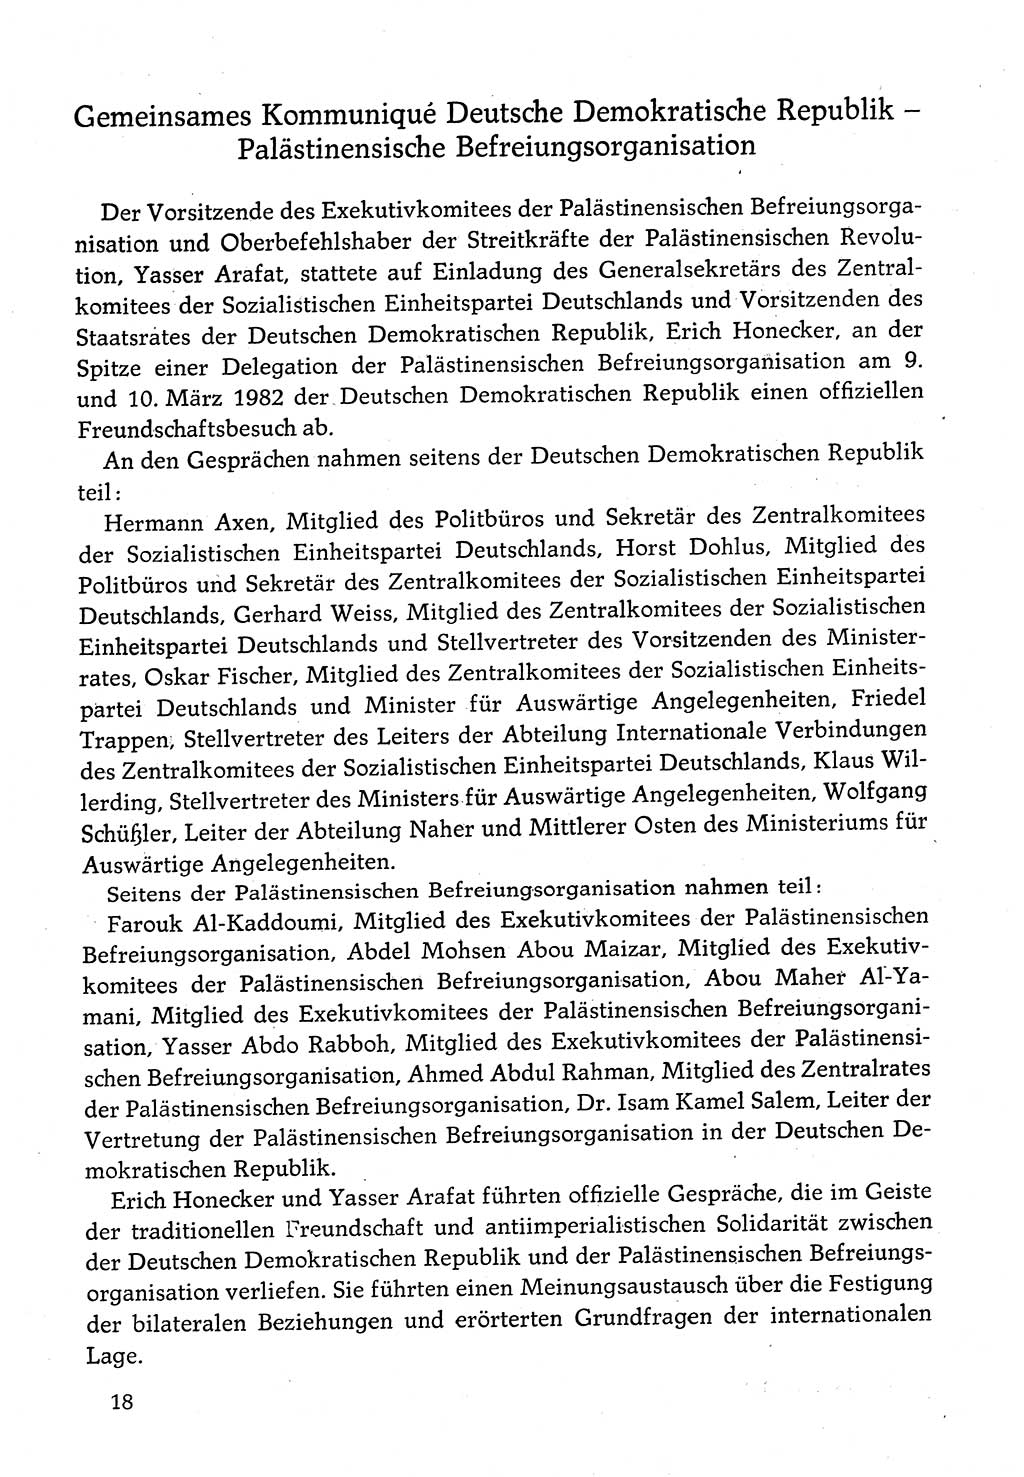 Dokumente der Sozialistischen Einheitspartei Deutschlands (SED) [Deutsche Demokratische Republik (DDR)] 1982-1983, Seite 18 (Dok. SED DDR 1982-1983, S. 18)